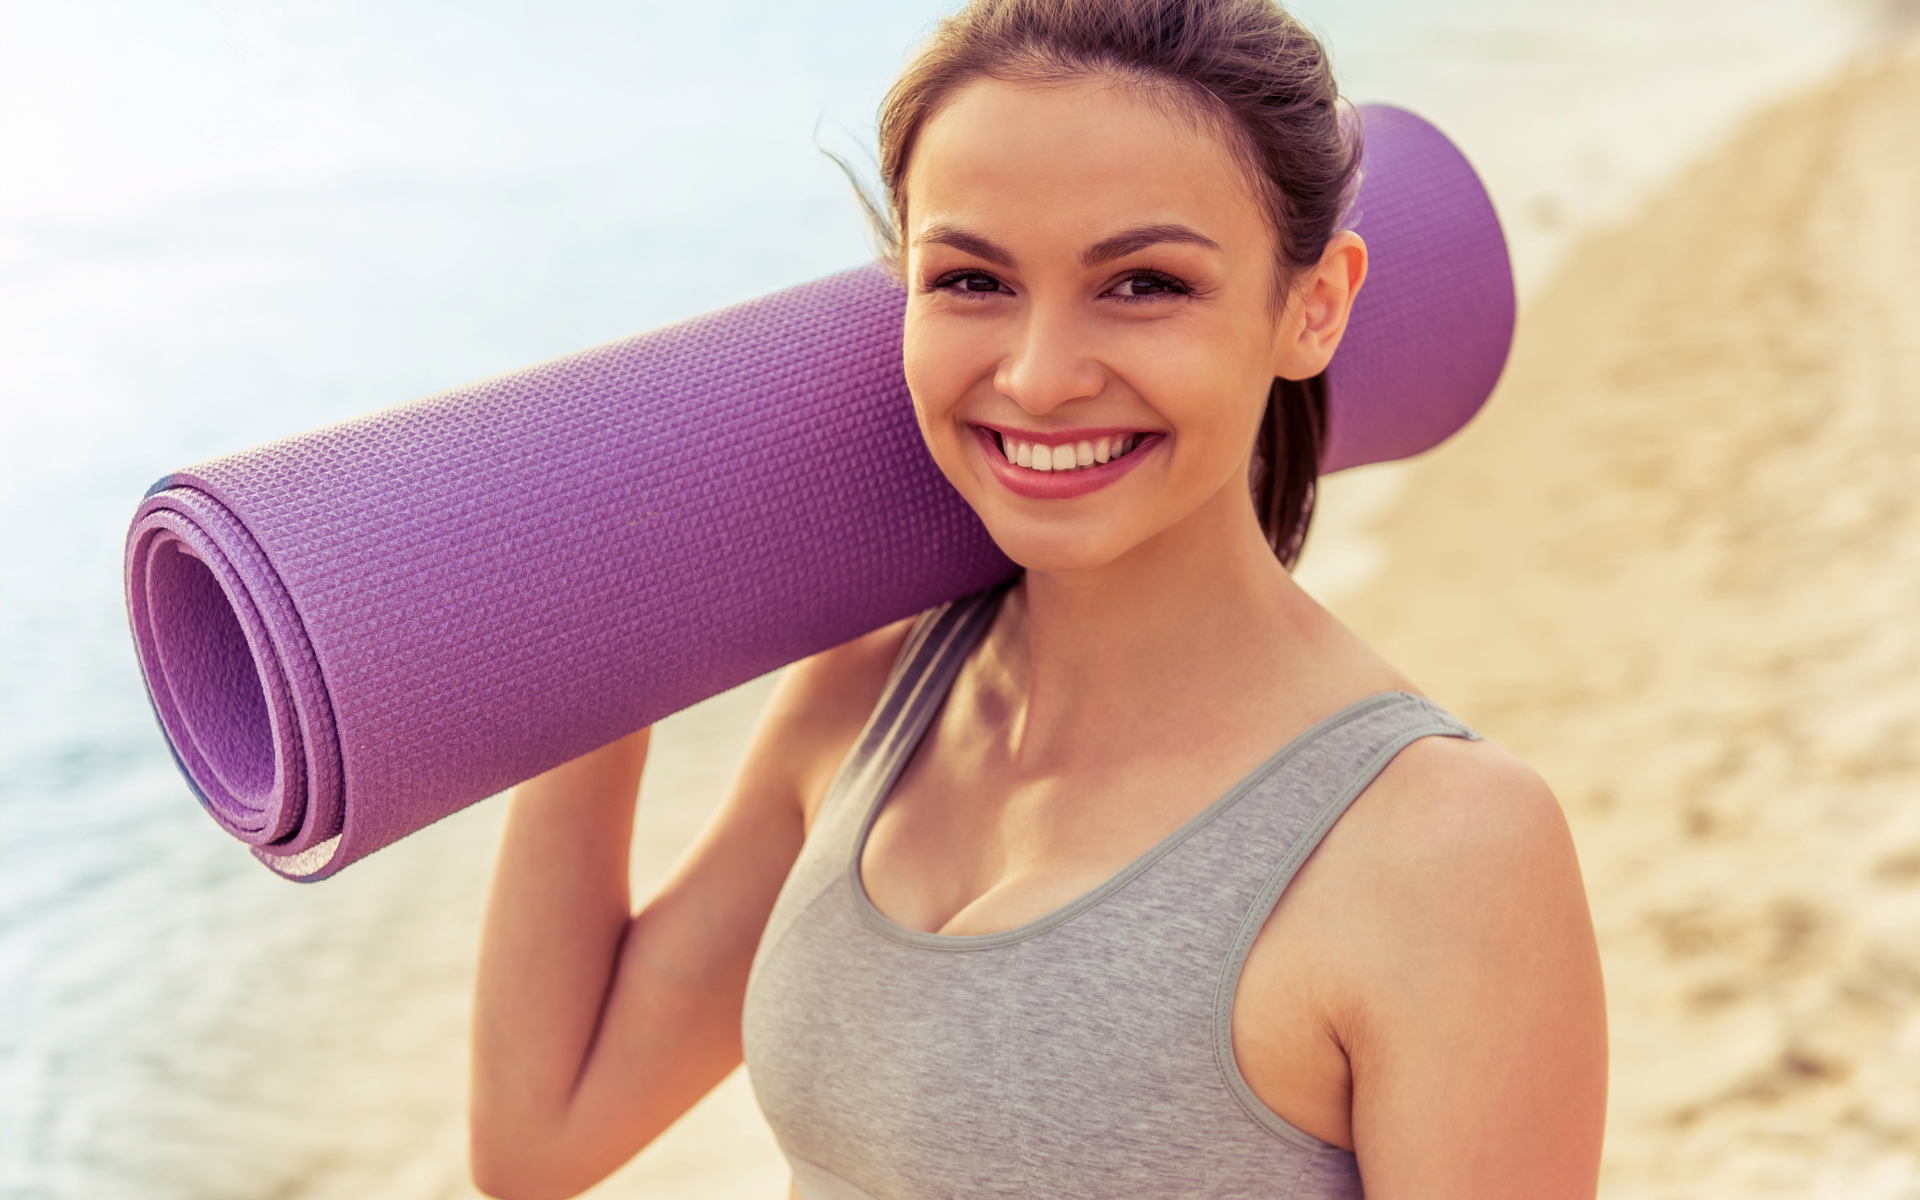 Спортивная девушка с ковриком для йоги на пляже